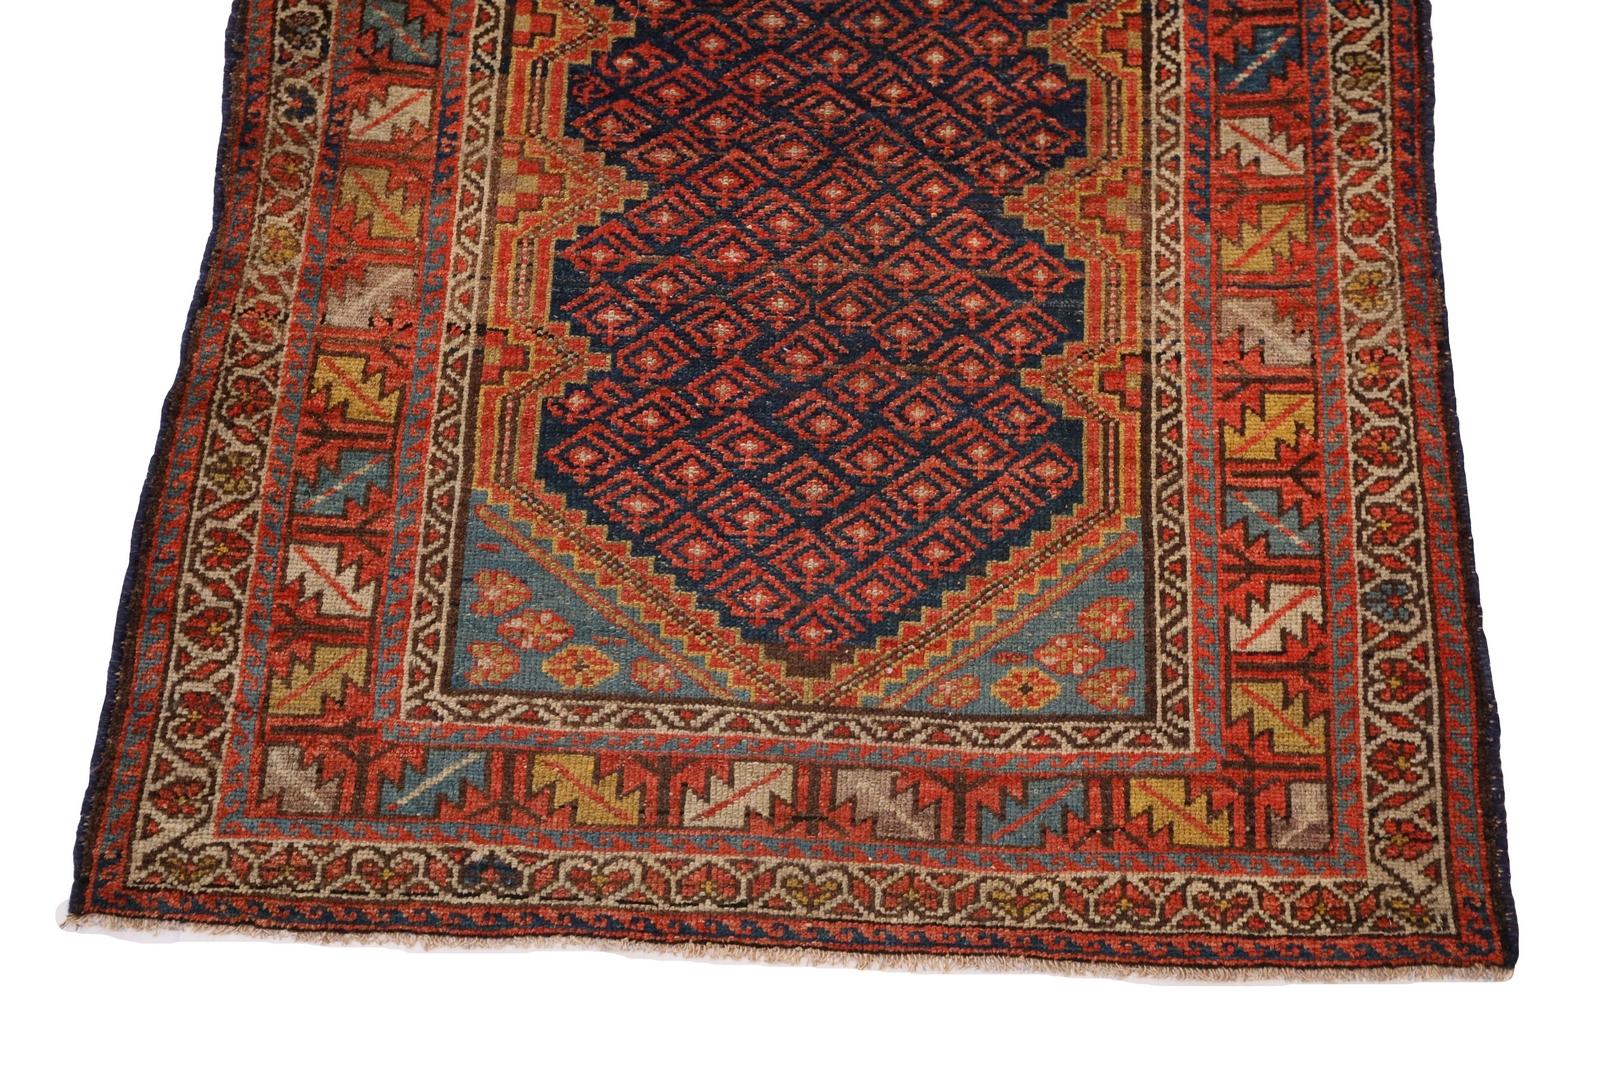 Ein Malayer-Teppich ist ein wahres Meisterwerk, das mit äußerster Sorgfalt und Liebe zum Detail gewebt wurde. Dieser besondere Malayer-Teppich hat ein tiefes marineblaues Feld, das mit atemberaubenden tiefroten geometrischen Motiven verziert ist.